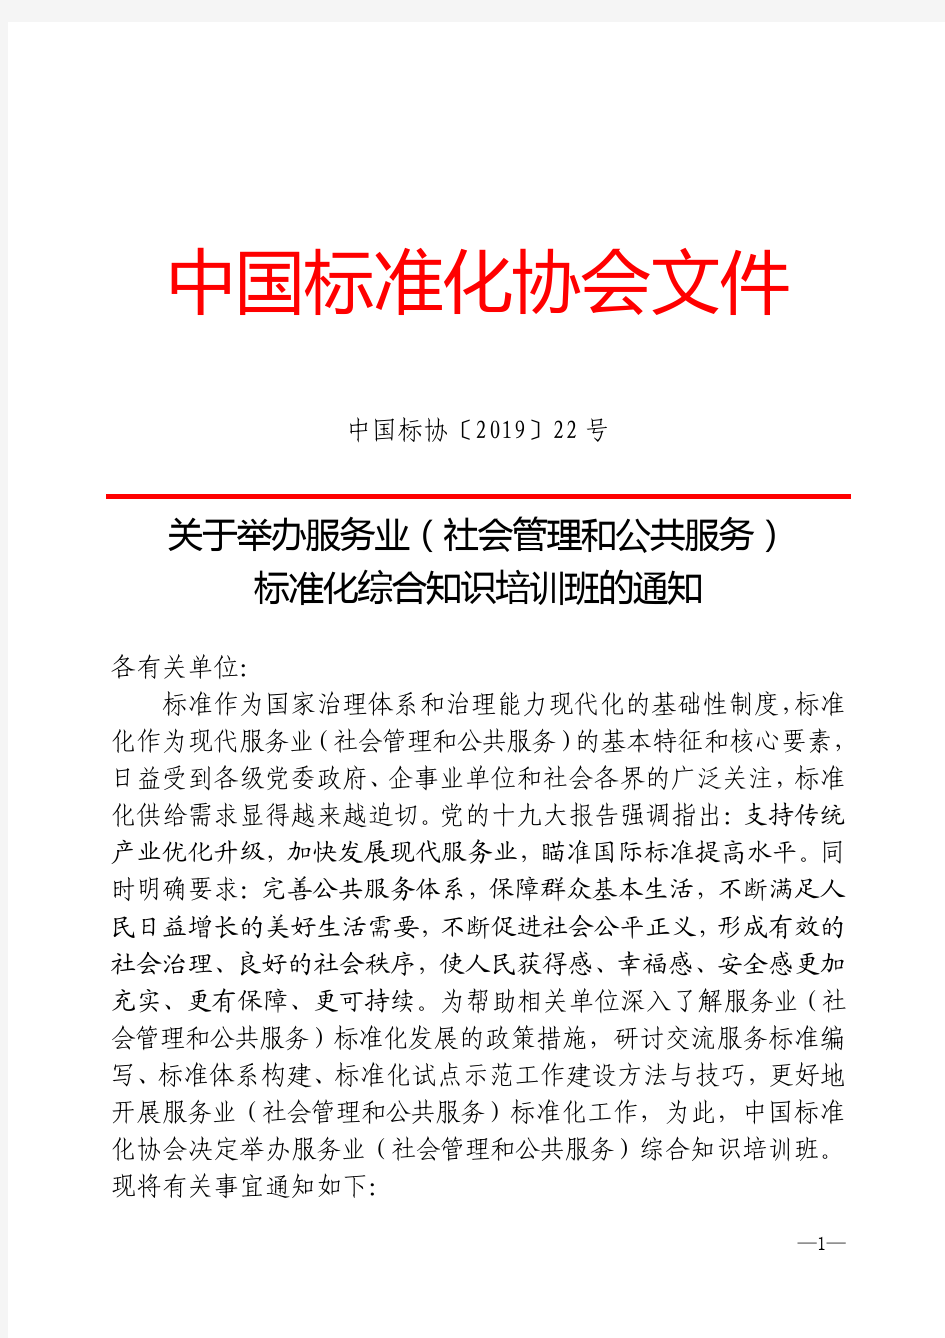 中国标准化协会文件